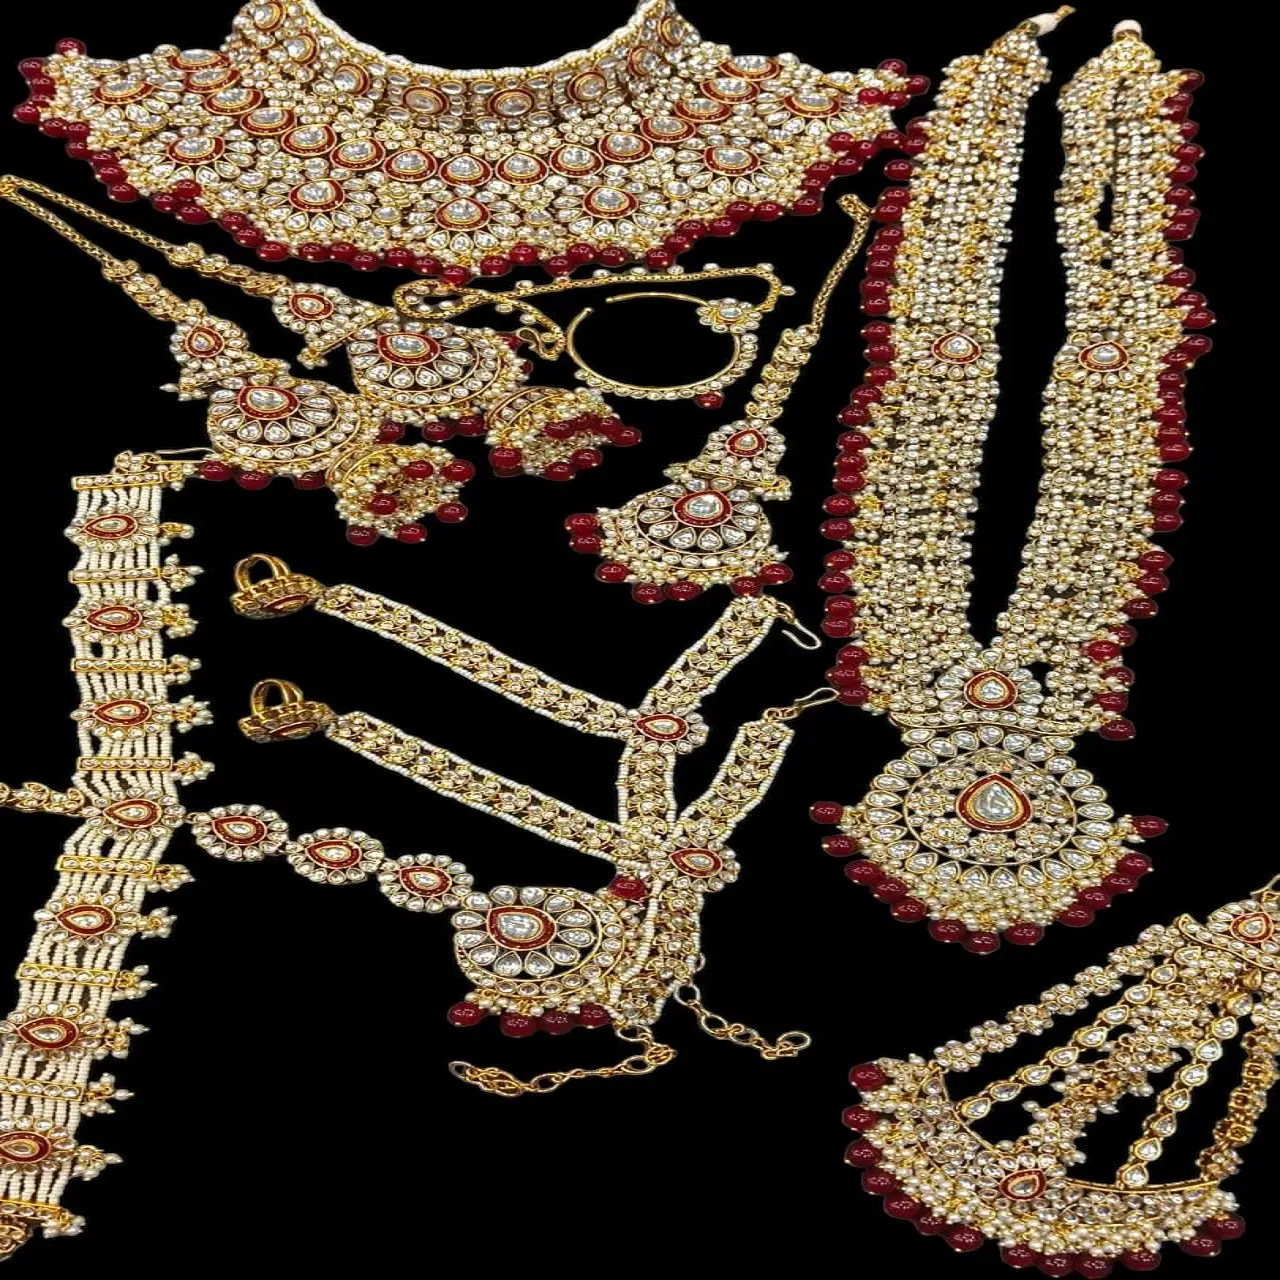 مجموعة مجوهرات الزفاف المصنوعة يدويًا من كوندان باللؤلؤ الأحمر بالكامل من الشركة المصنعة للمجوهرات الماس كوندان بالجملة